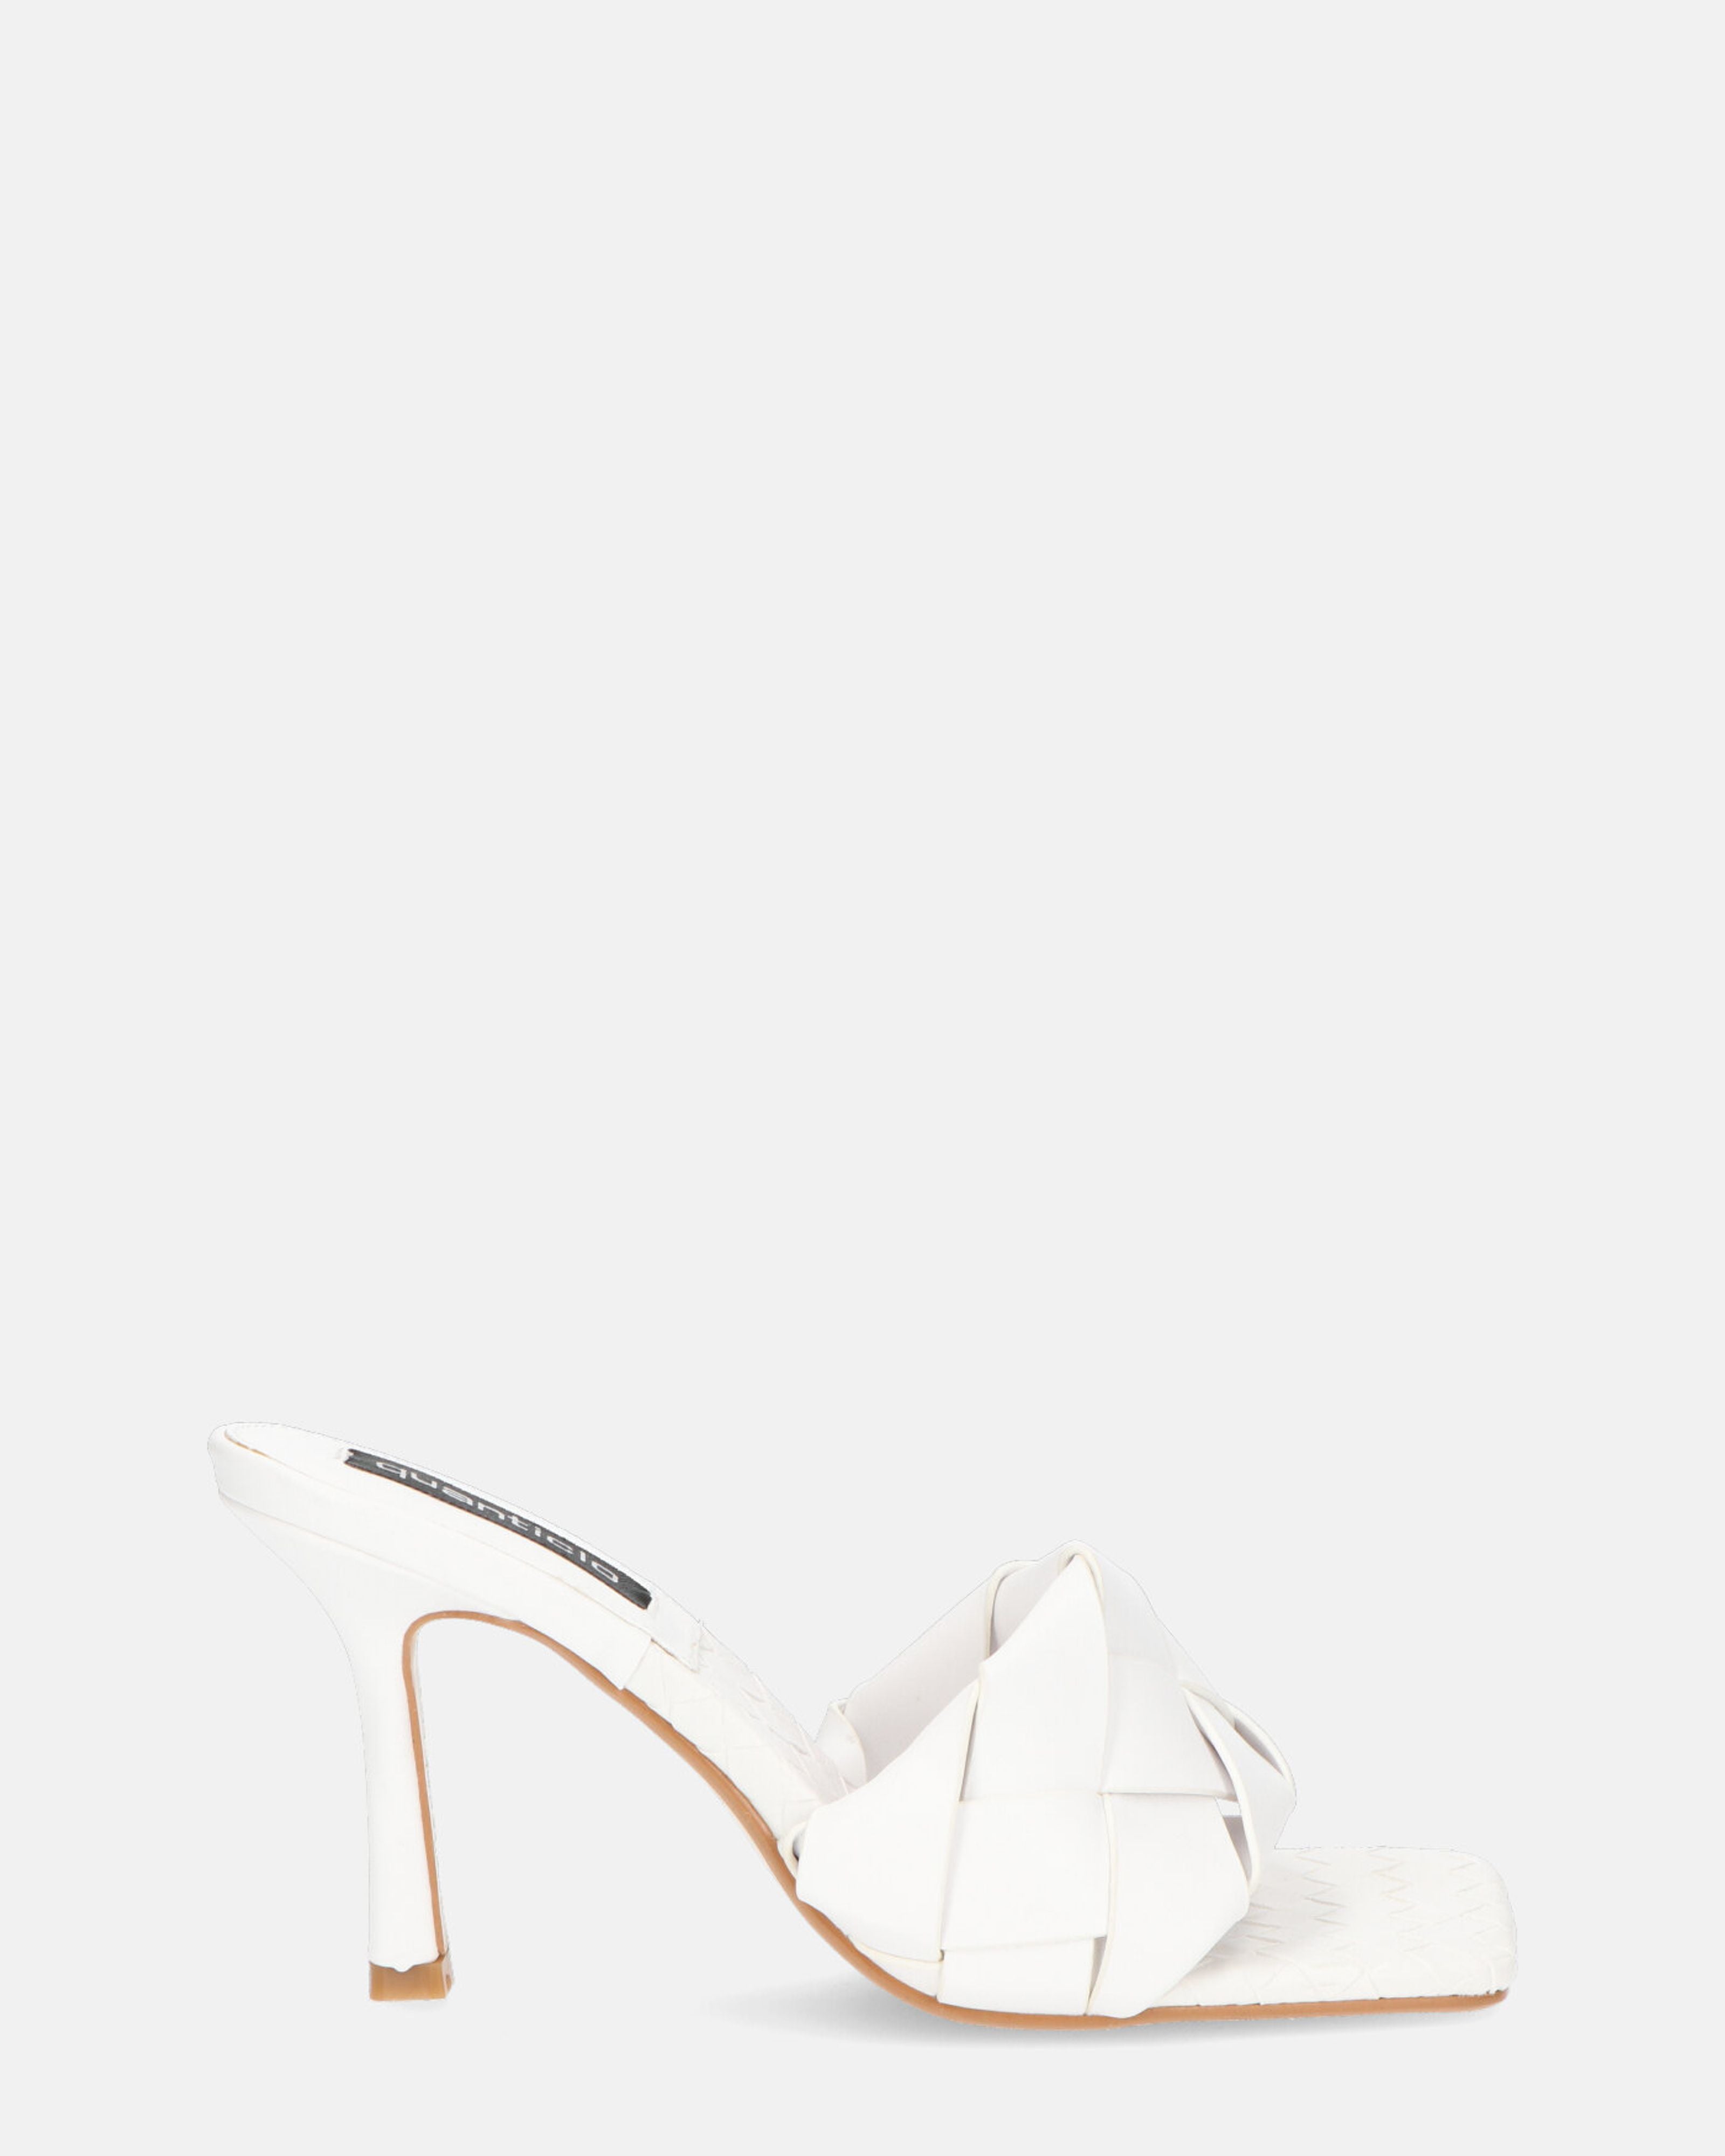 ENRICA - sandalia en piel trenzada blanca con tacón